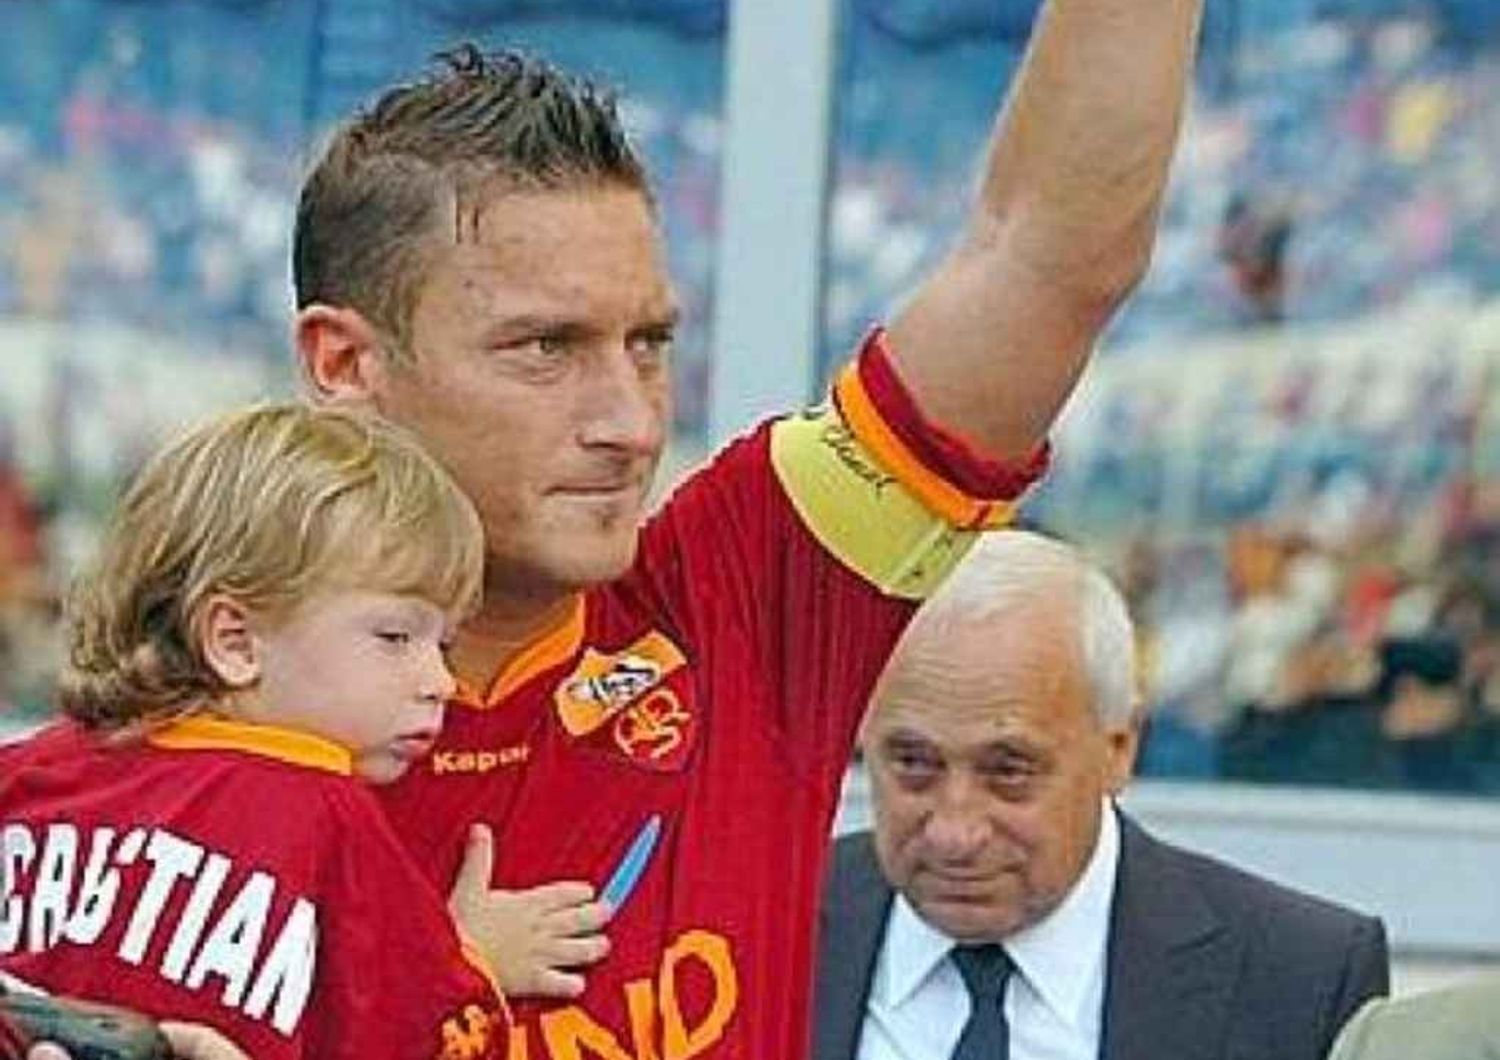 Calcio: Roma-Verona, Totti festeggia 38esimo compleanno in campo